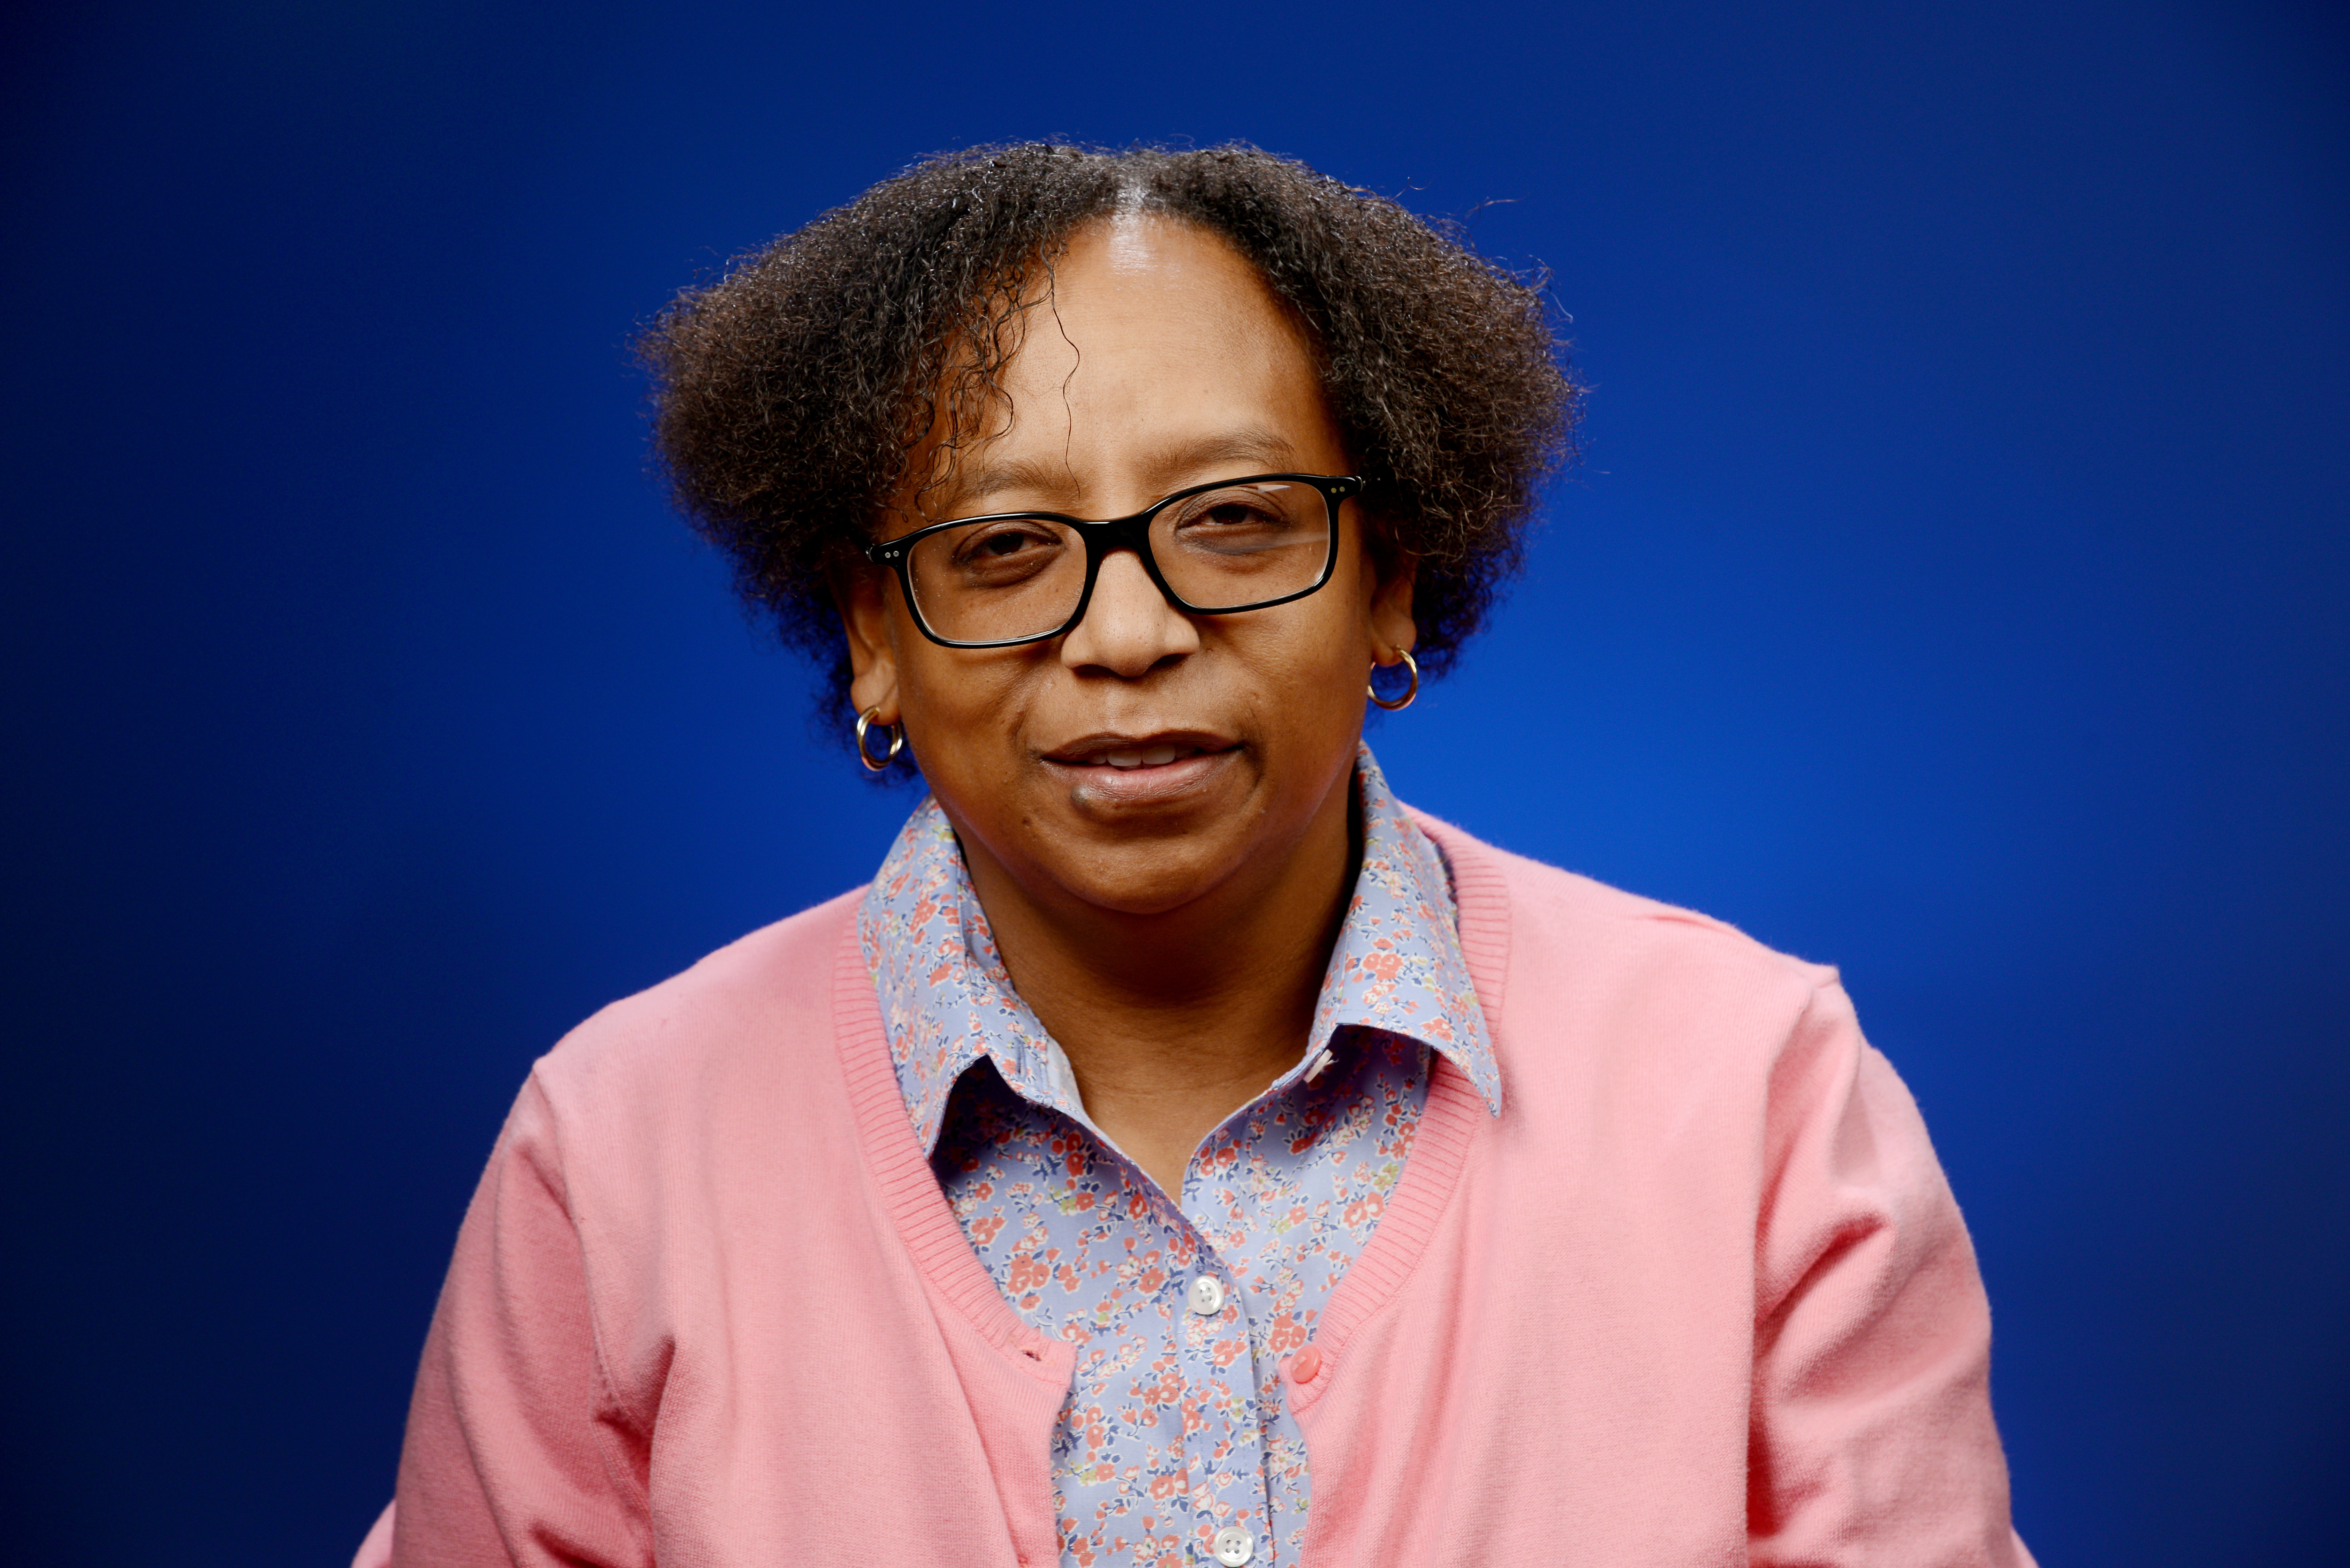 Dr. Cynthia A. Crawford